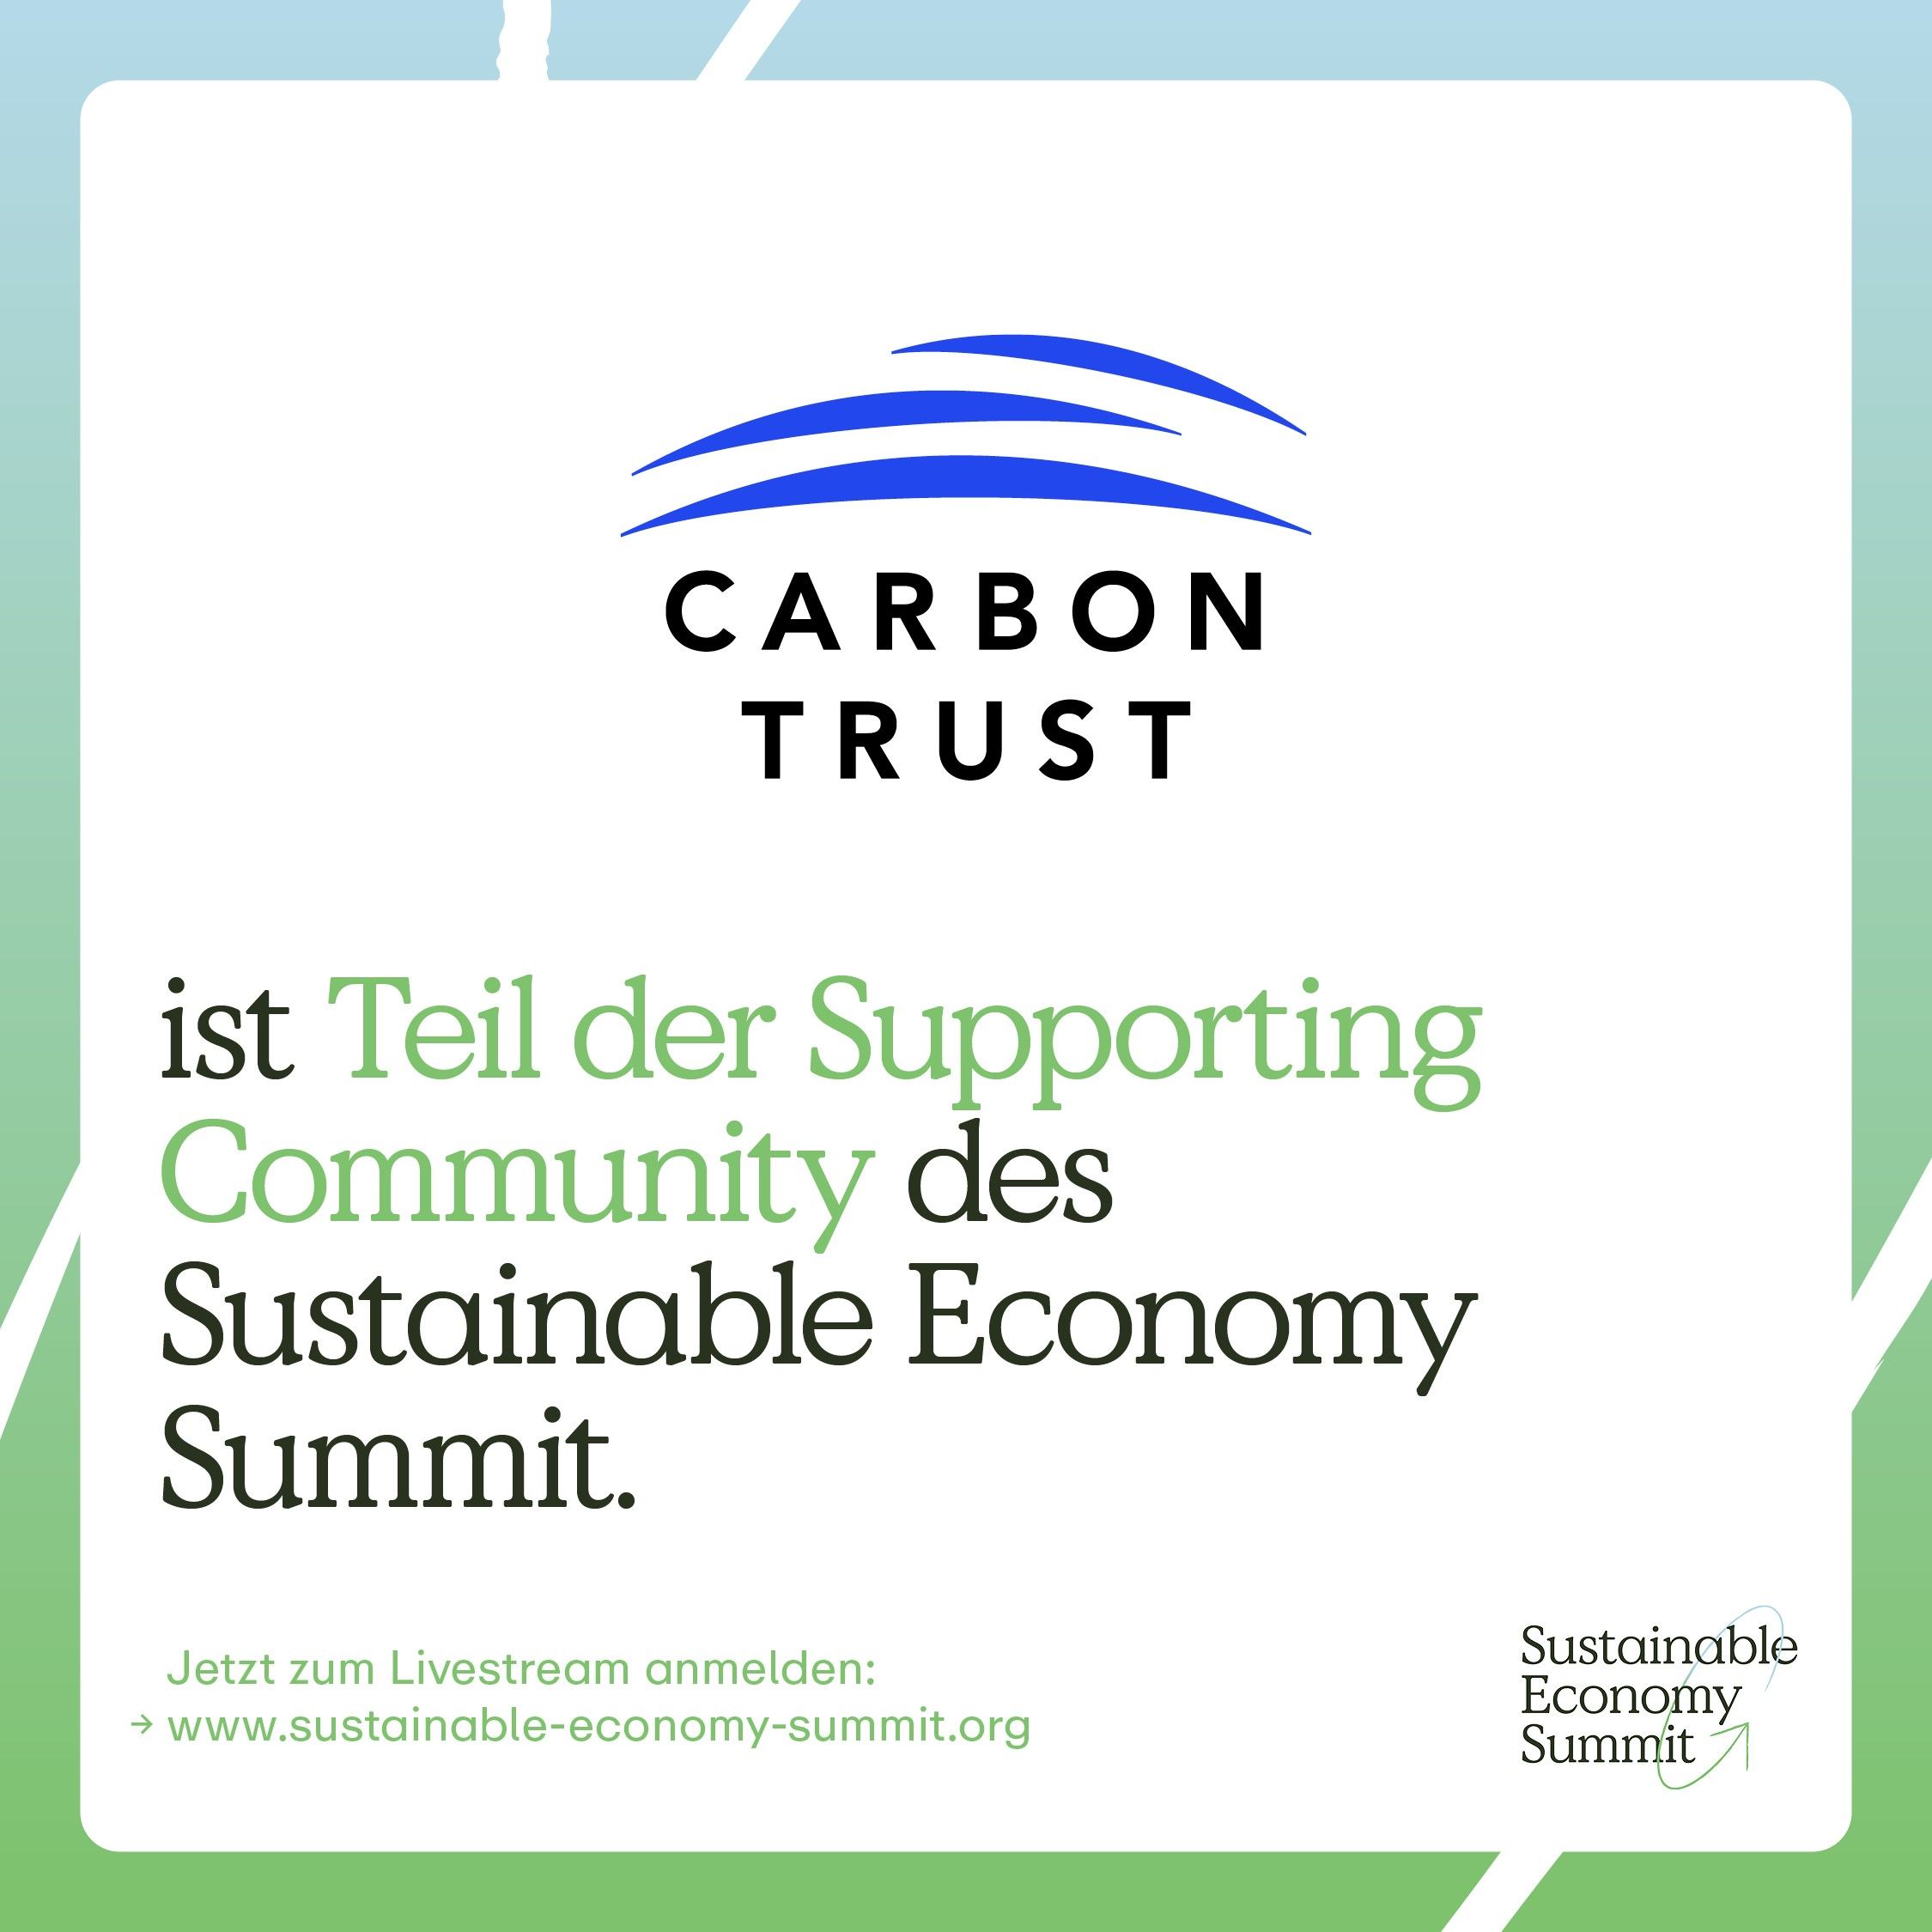 Economy Summit - Germany promo image 